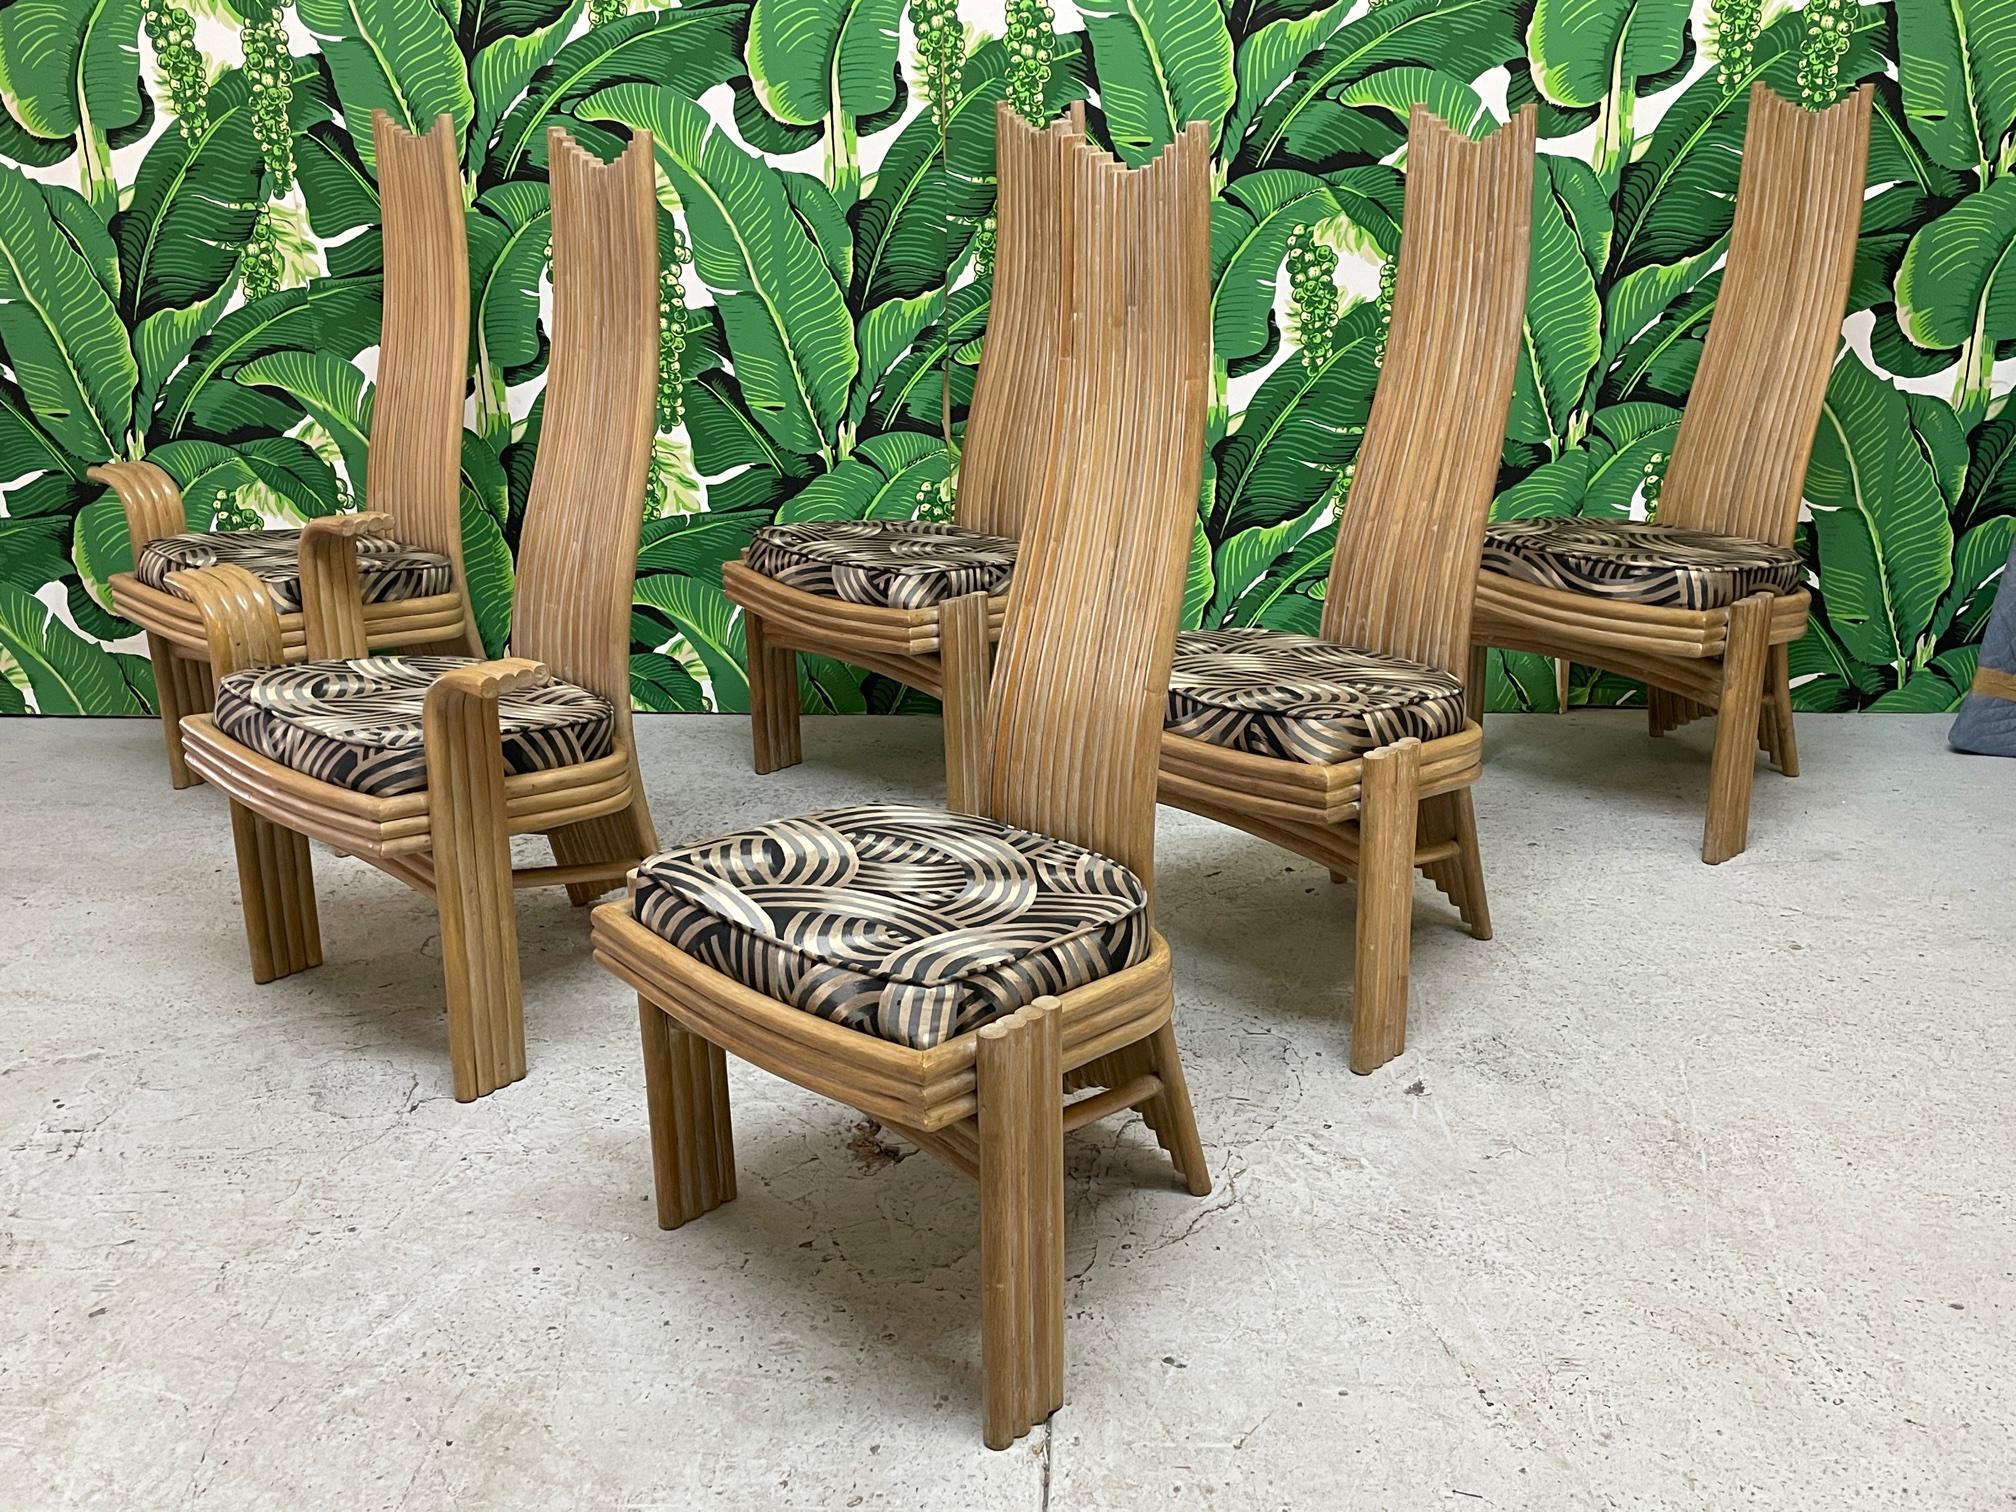 Seltener Satz von sechs Rattan-Esszimmerstühlen mit hoher Rückenlehne, die an den Stil von Danny Ho Fong oder Mackintosh erinnern. Einzigartiges modernes skulpturales Design mit zwei Sesseln und vier Beistellstühlen. Guter Zustand mit altersgemäßen